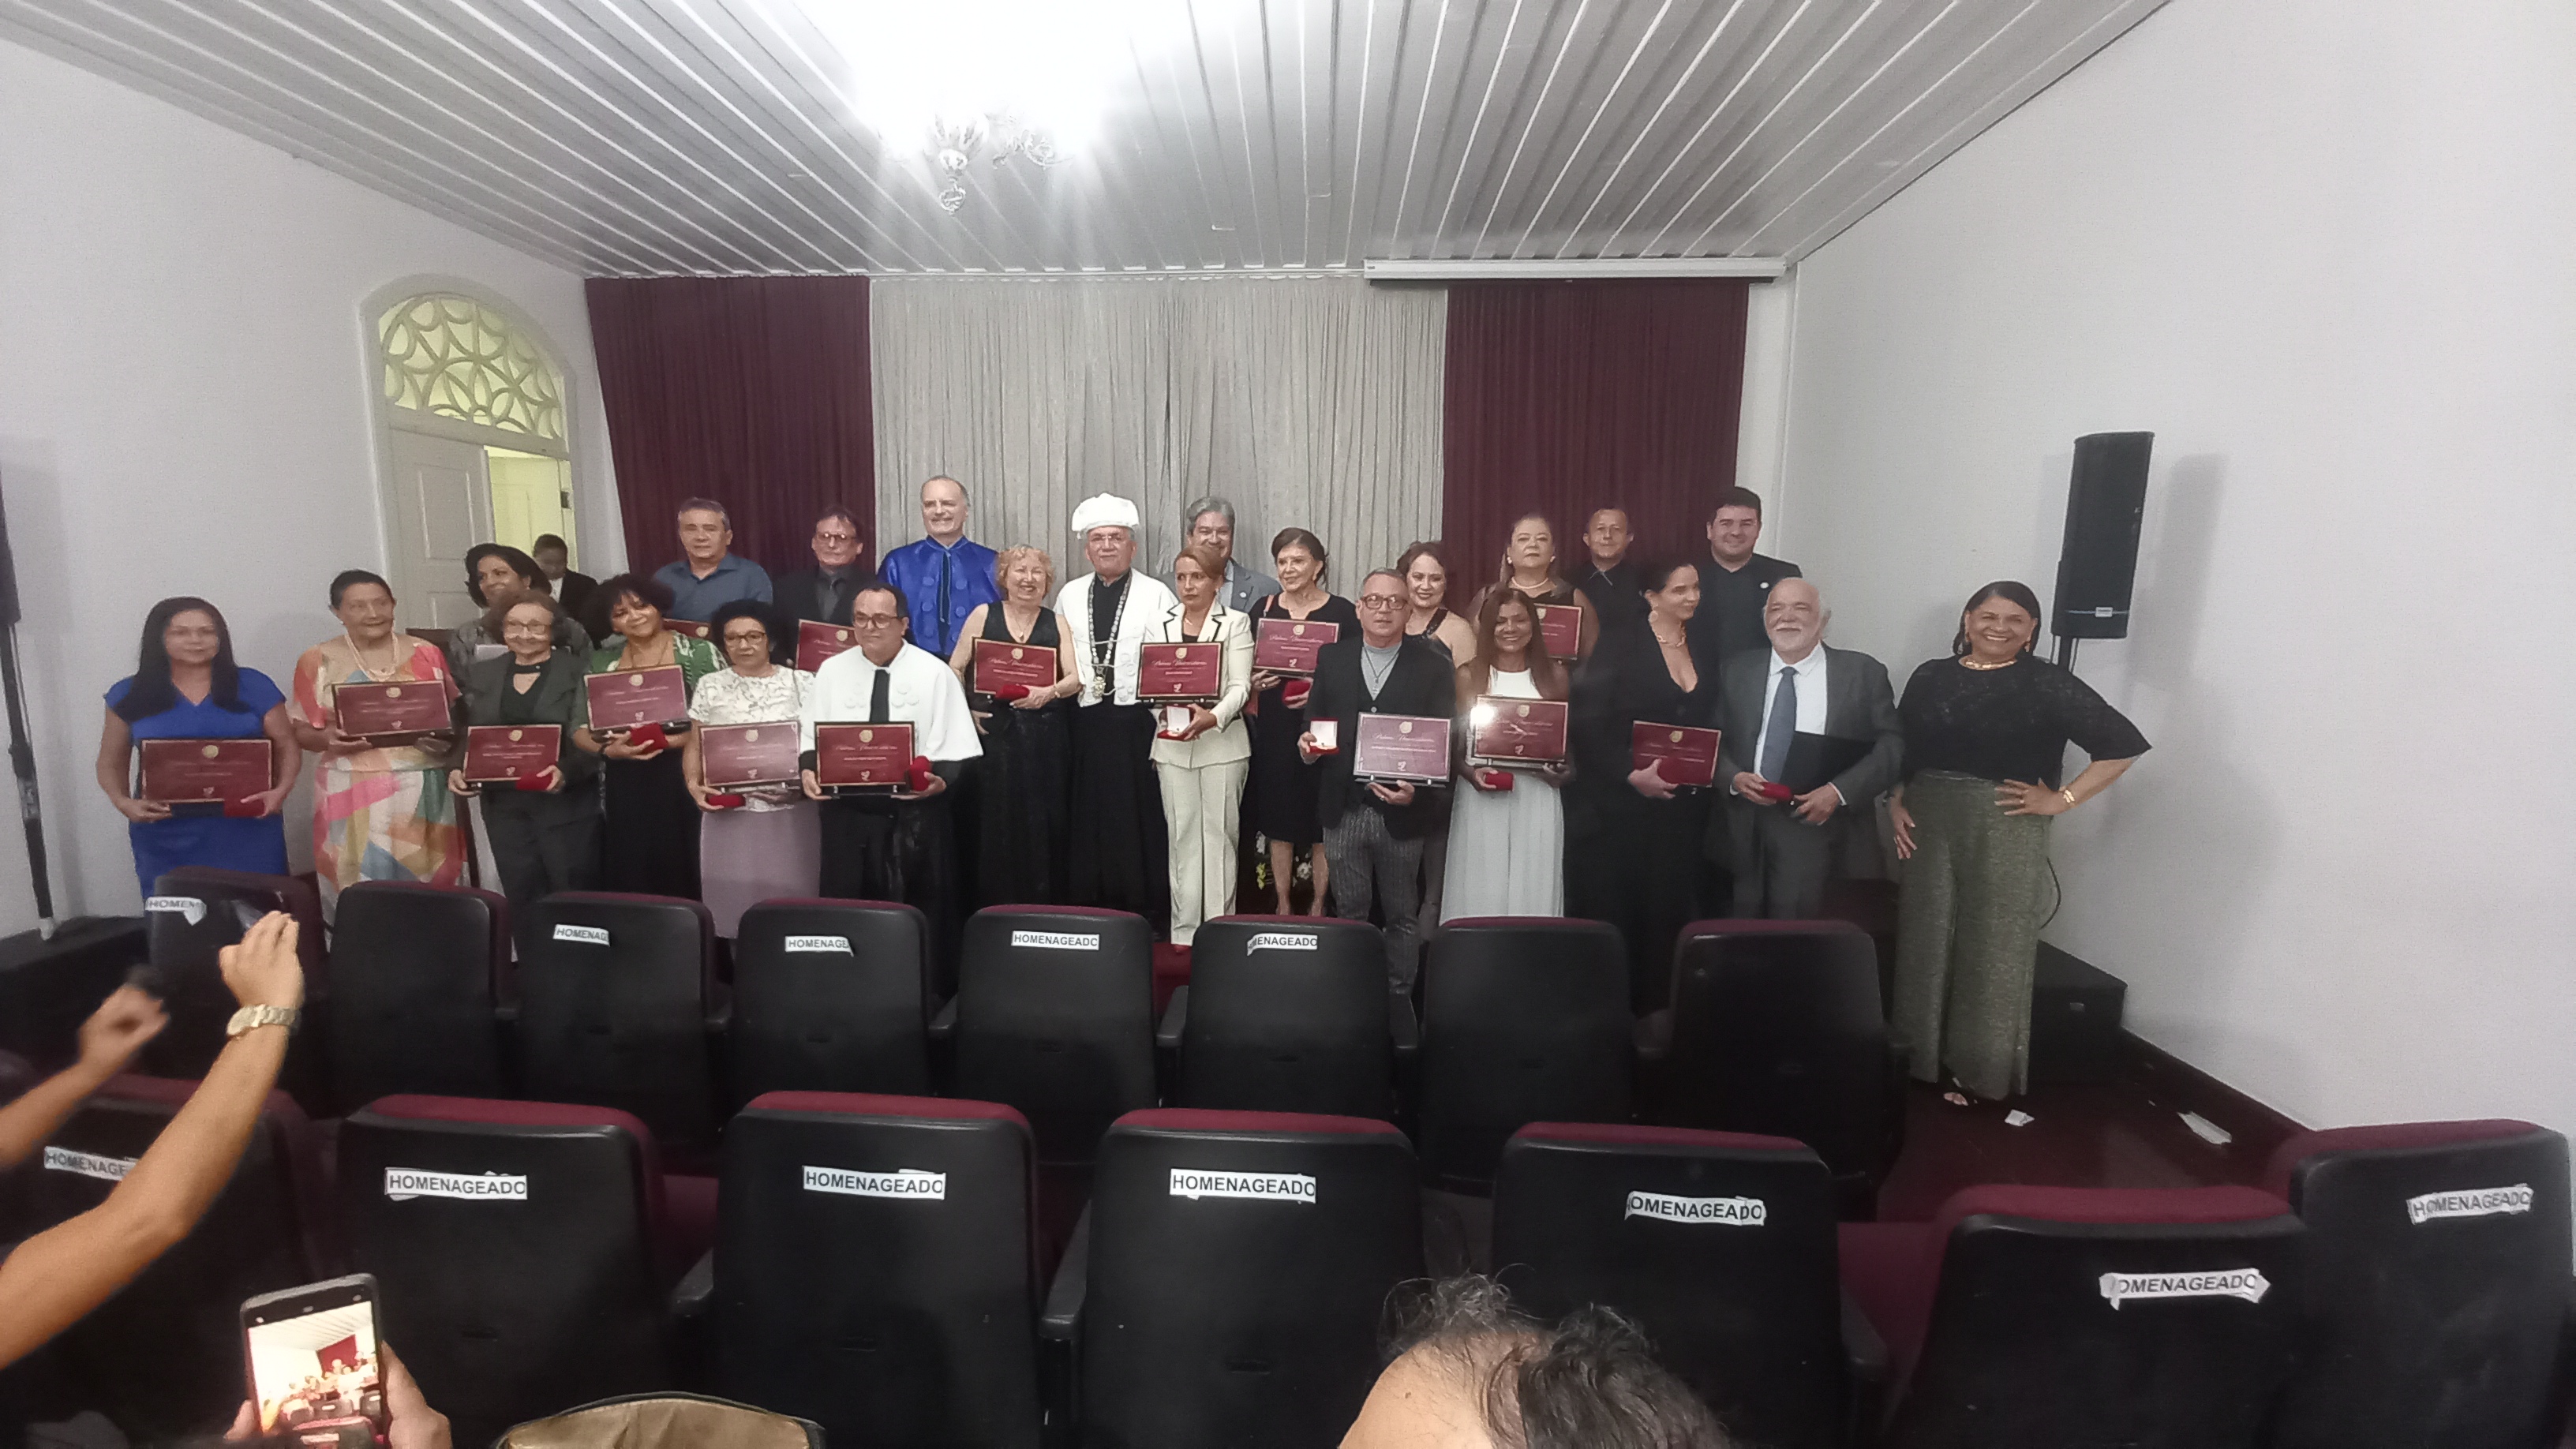 “A imortalidade renasce assim”: Palmas Universitárias homenageia construtores da história da UFMA, no Palácio Cristo Rei